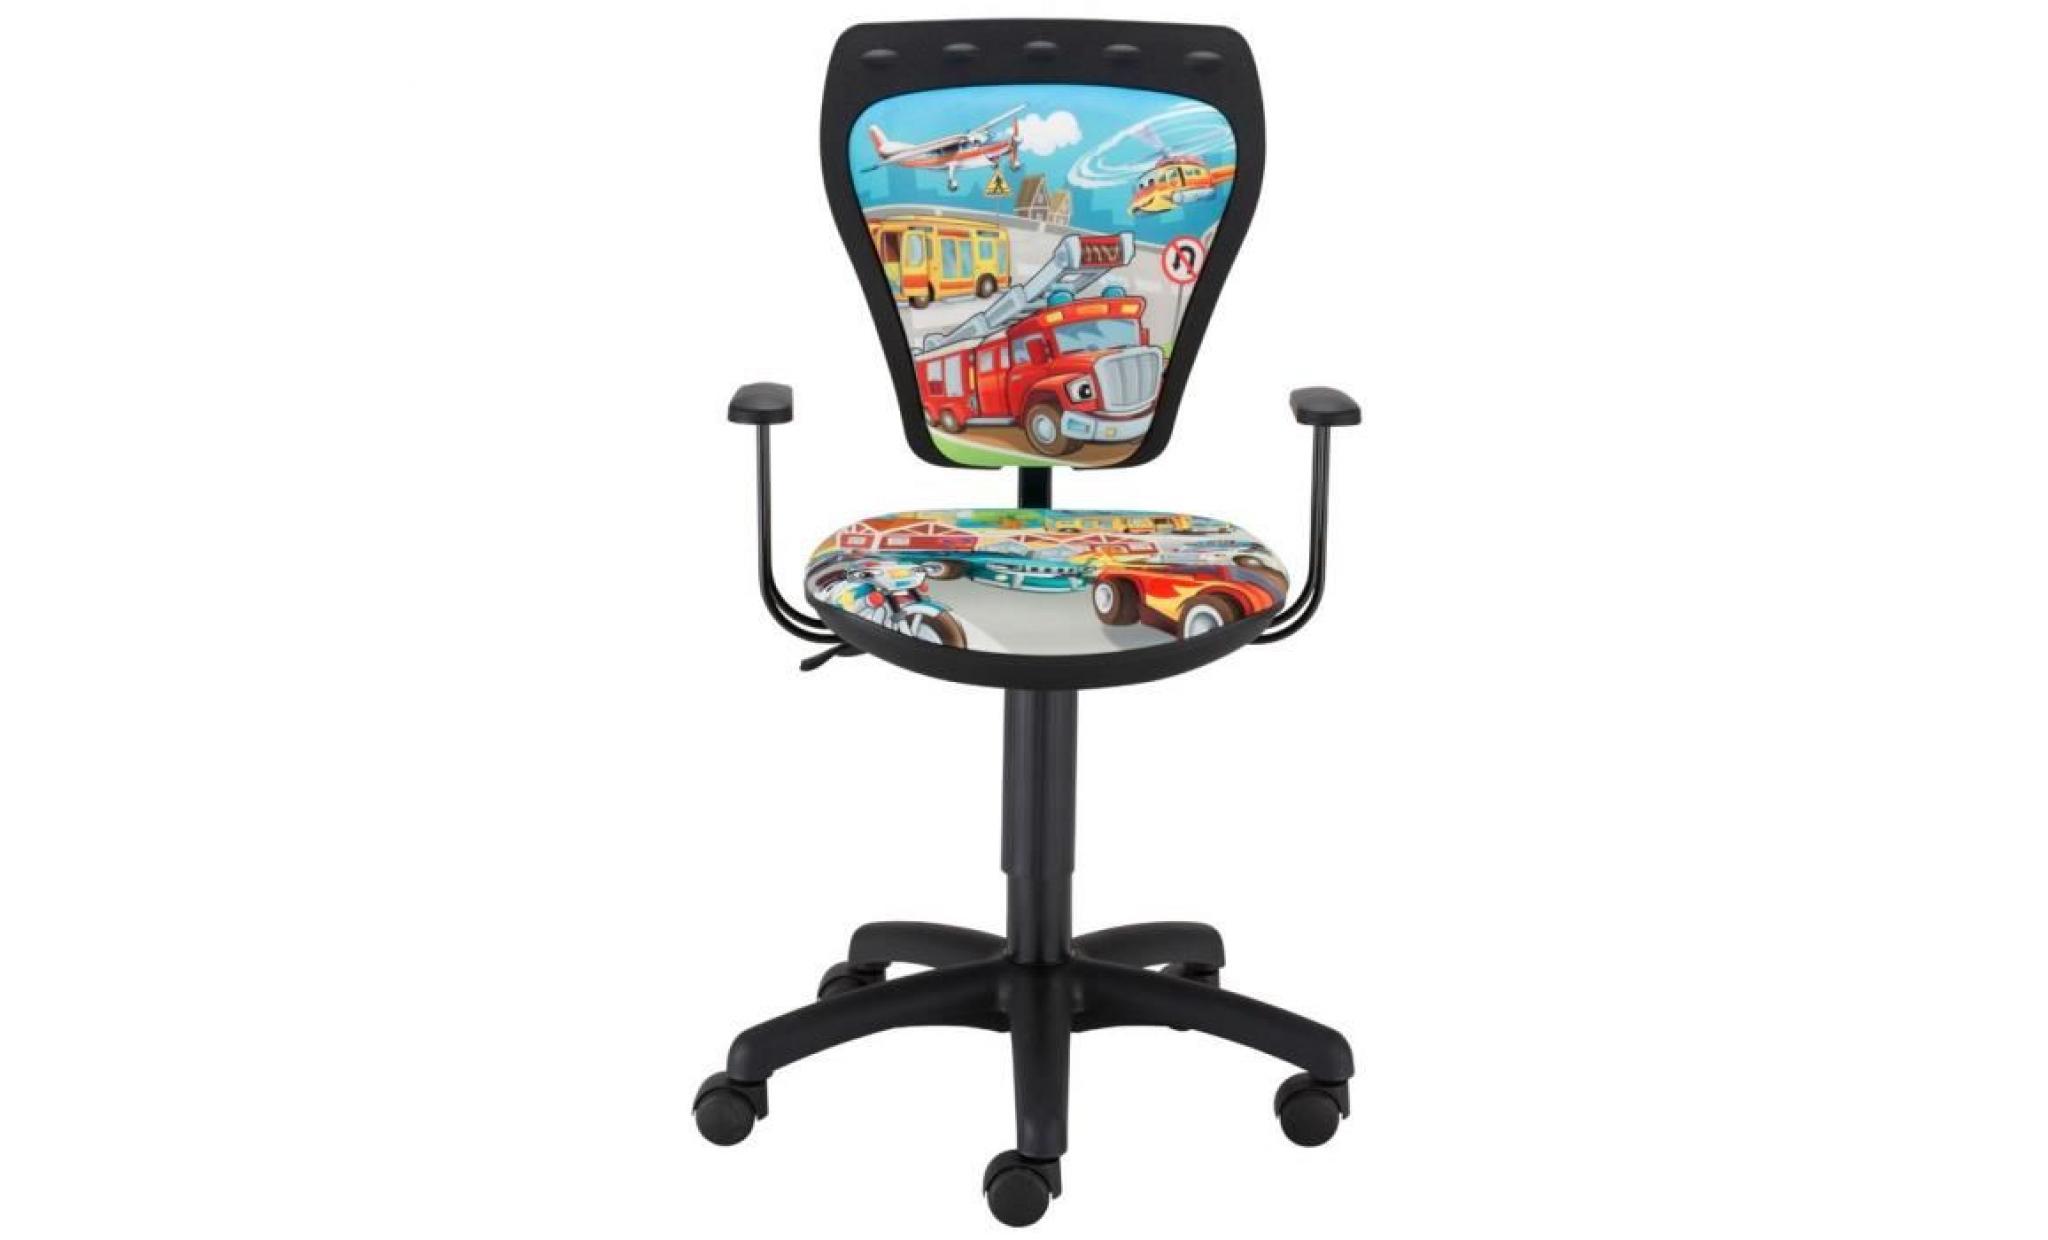 siège tournant chaise de bureau voitures enfants chambre coloré maison accoudoirs ts22 rts